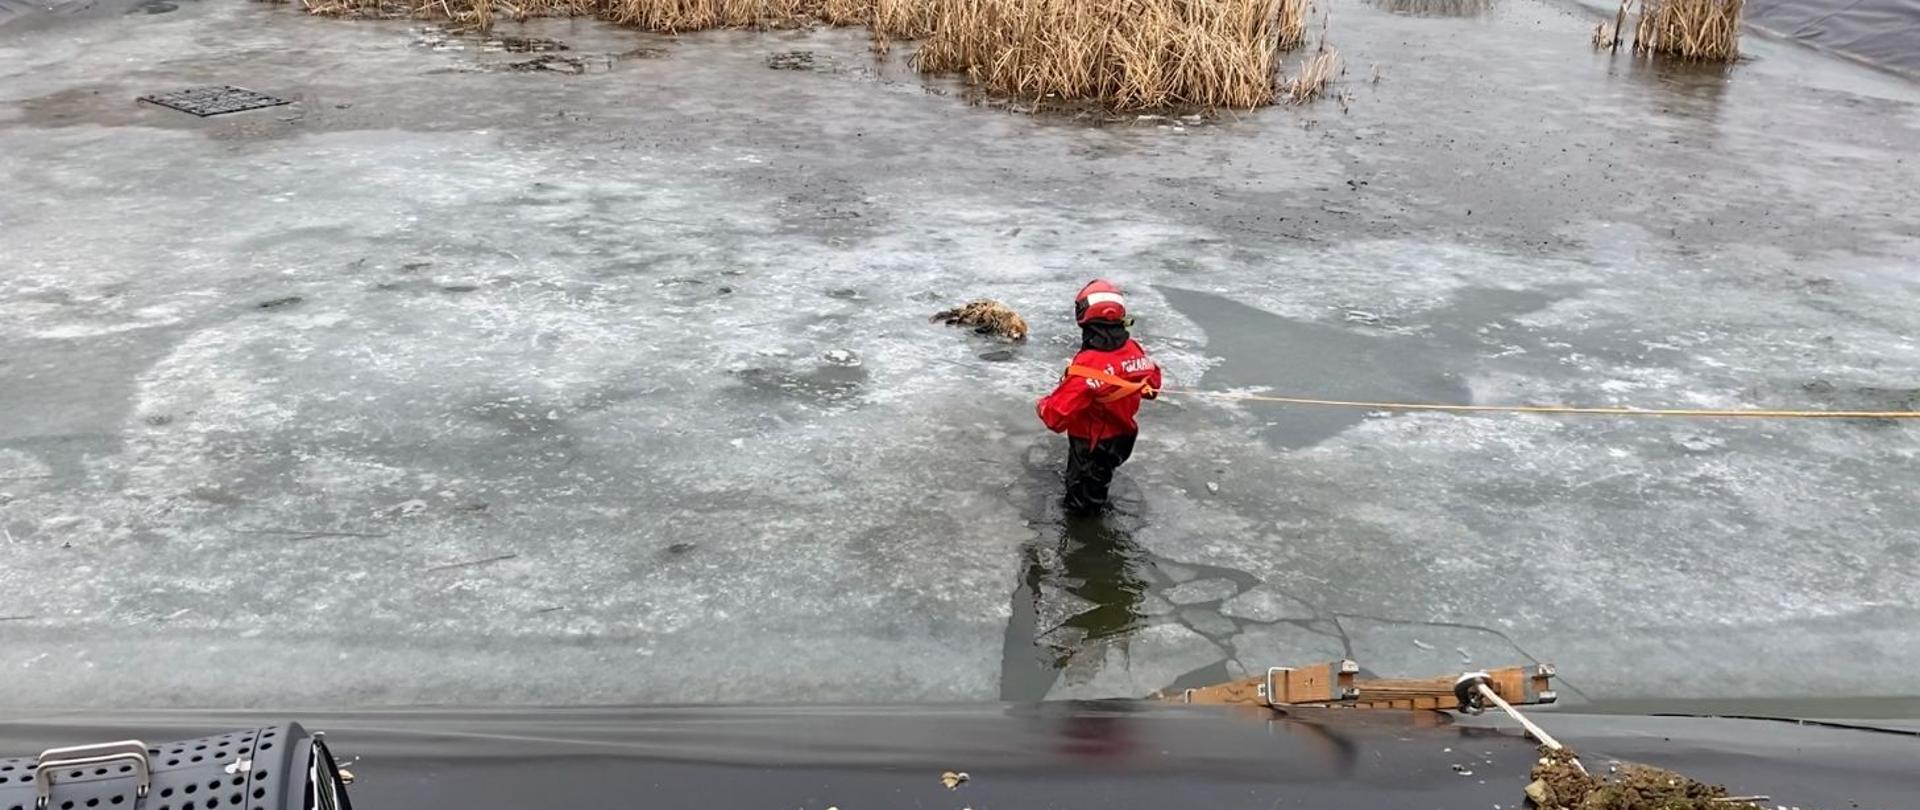 Lis uwięziony w zbiorniku wodnym w miejscowości Skarbimierz Osiedle - ratownik zabezpieczony linką ratowniczą próbuje podjąć lisa ze zbiornika wodnego